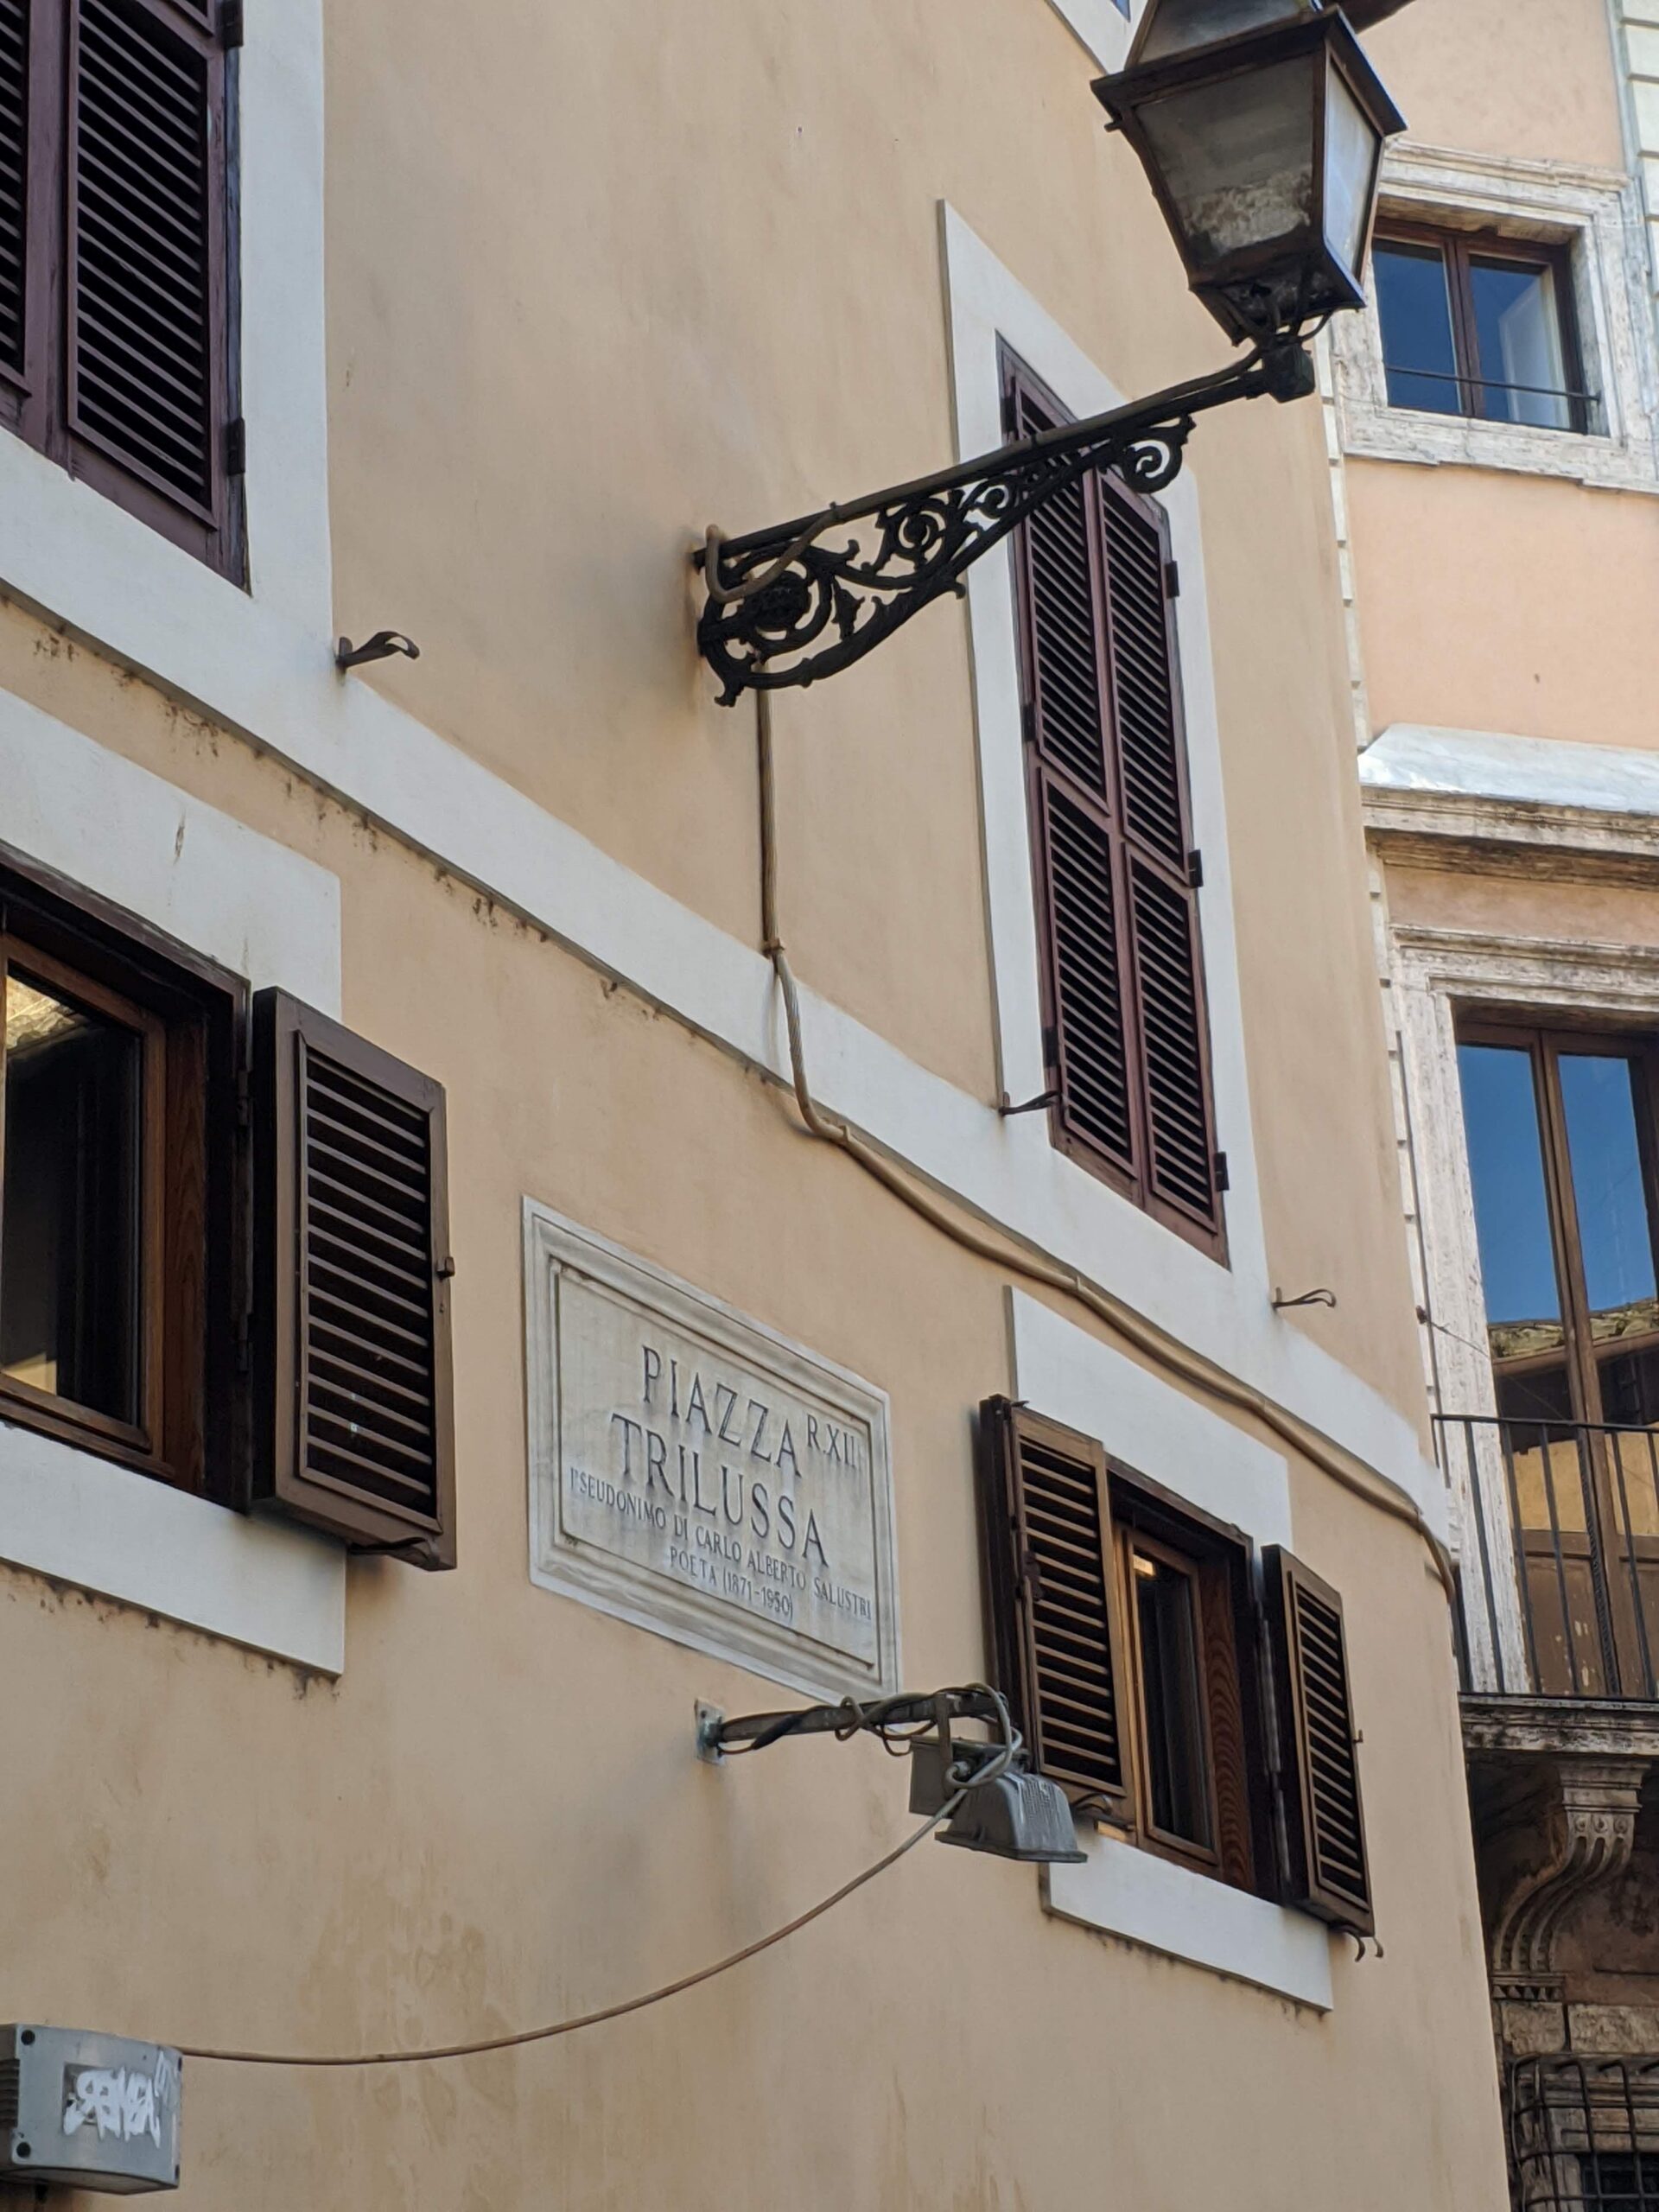 Placa de rua branca com a inscrição "PIAZZA TRILUSSA" em letras pretas, fixada na parede de um edifício antigo com janelas de persianas fechadas, com um poste de luz de metal ornamentado à frente.